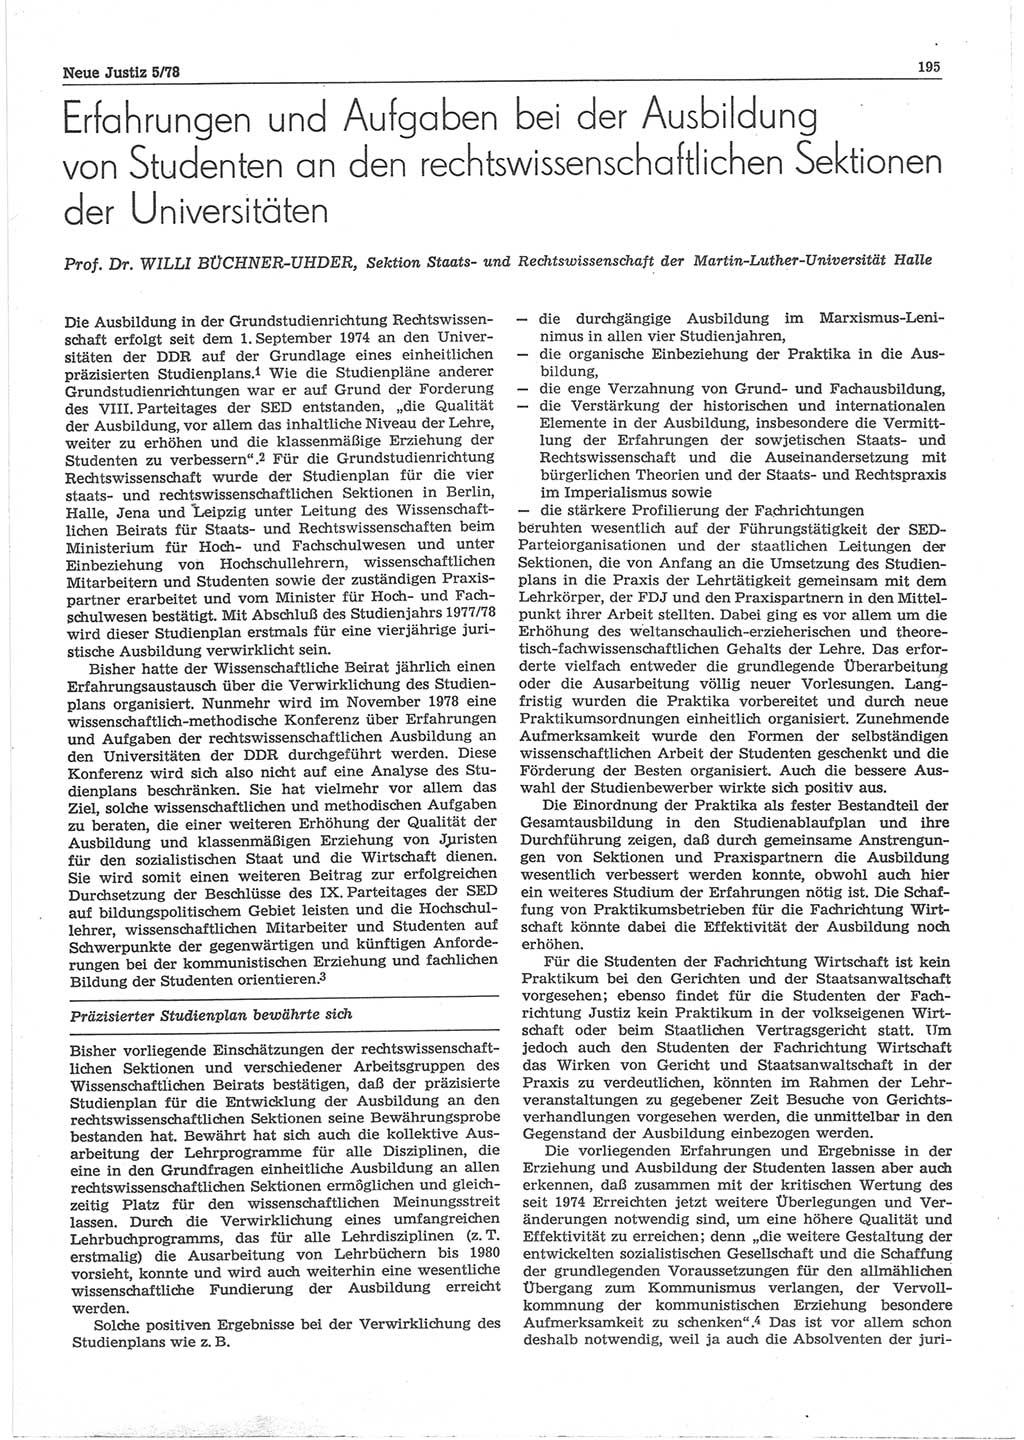 Neue Justiz (NJ), Zeitschrift für sozialistisches Recht und Gesetzlichkeit [Deutsche Demokratische Republik (DDR)], 32. Jahrgang 1978, Seite 195 (NJ DDR 1978, S. 195)